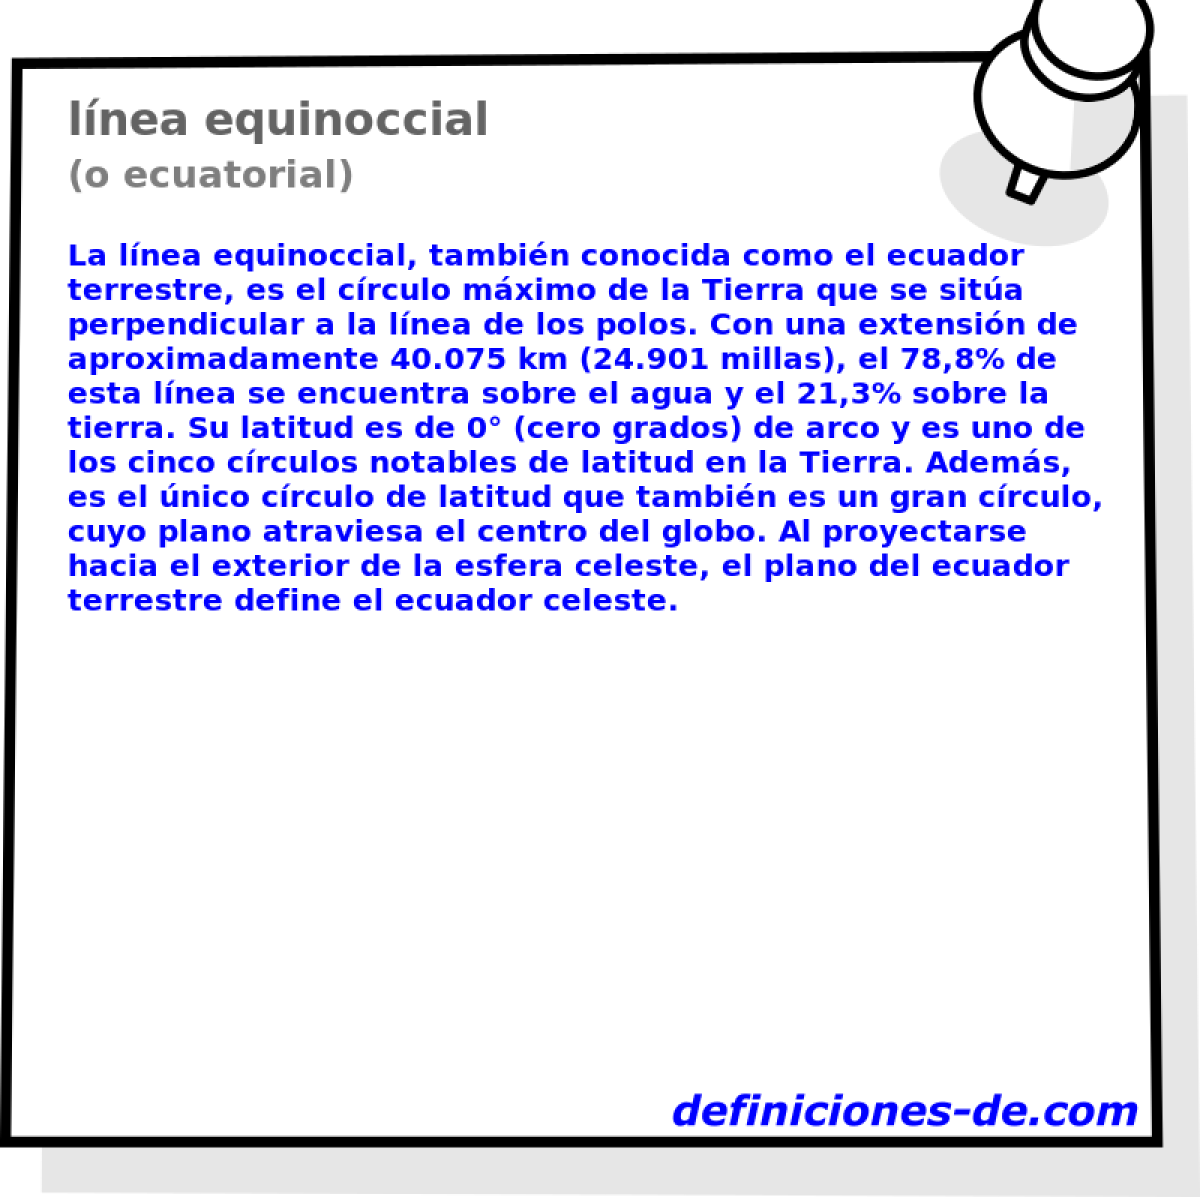 lnea equinoccial (o ecuatorial)